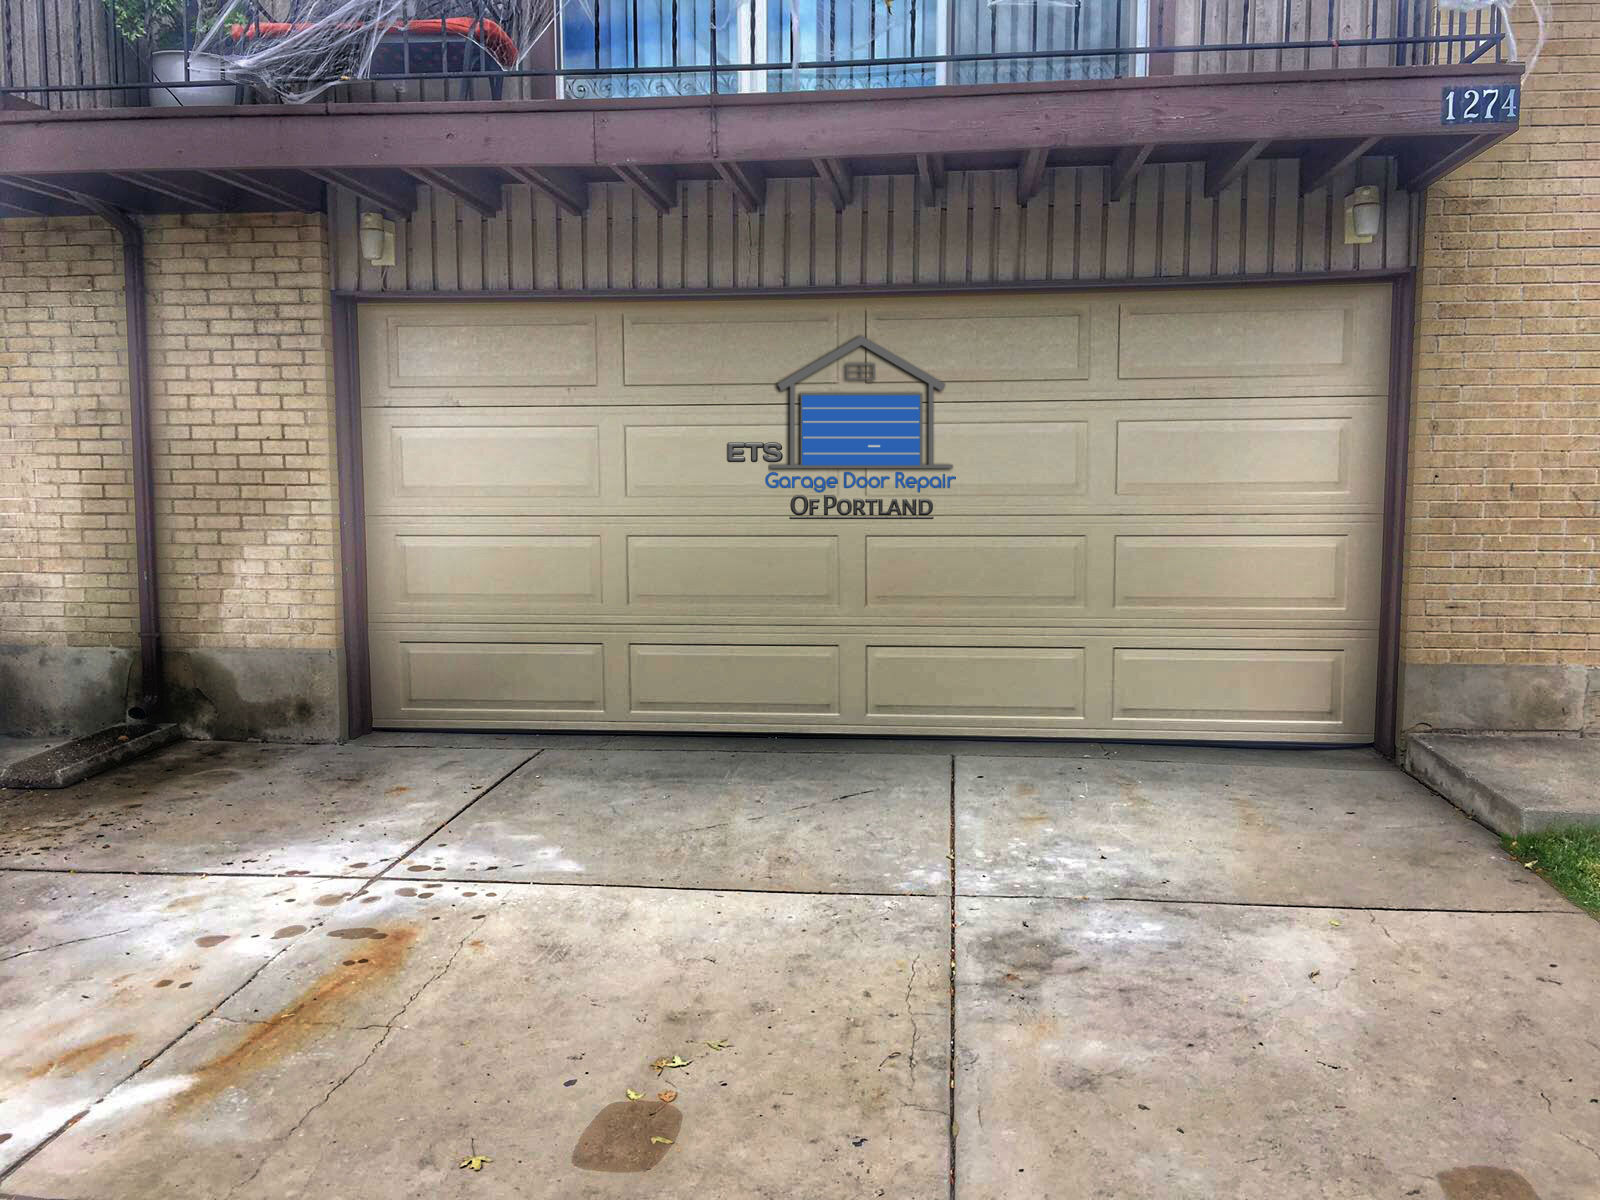 ETS Garage Door Repair Of Corvallis